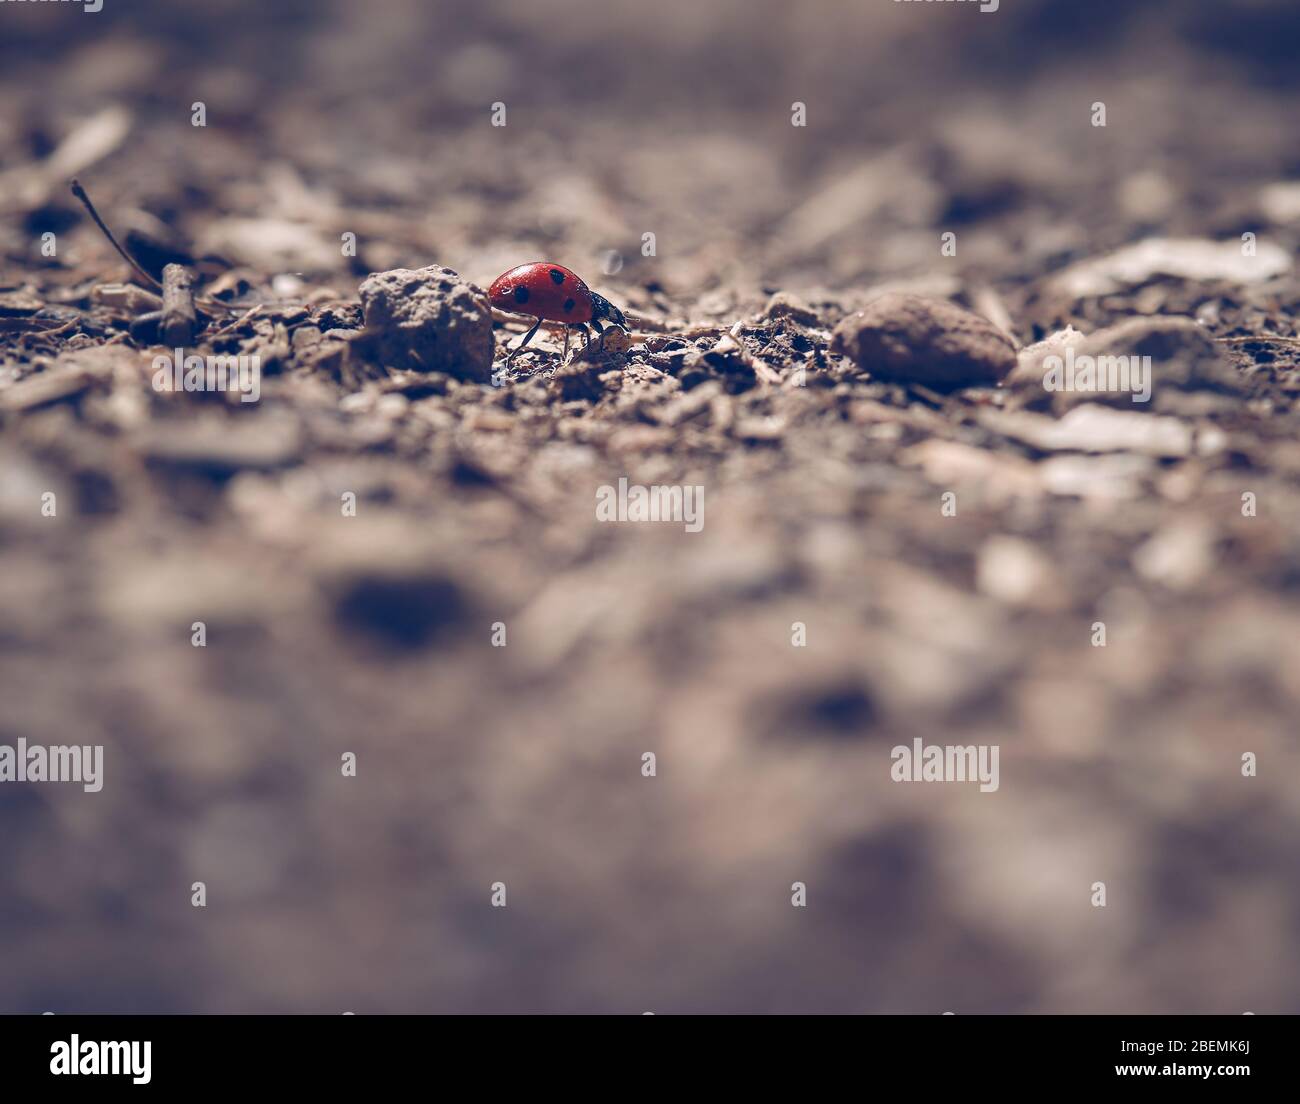 Escarabajo de señora pequeña en un mundo grande Foto de stock